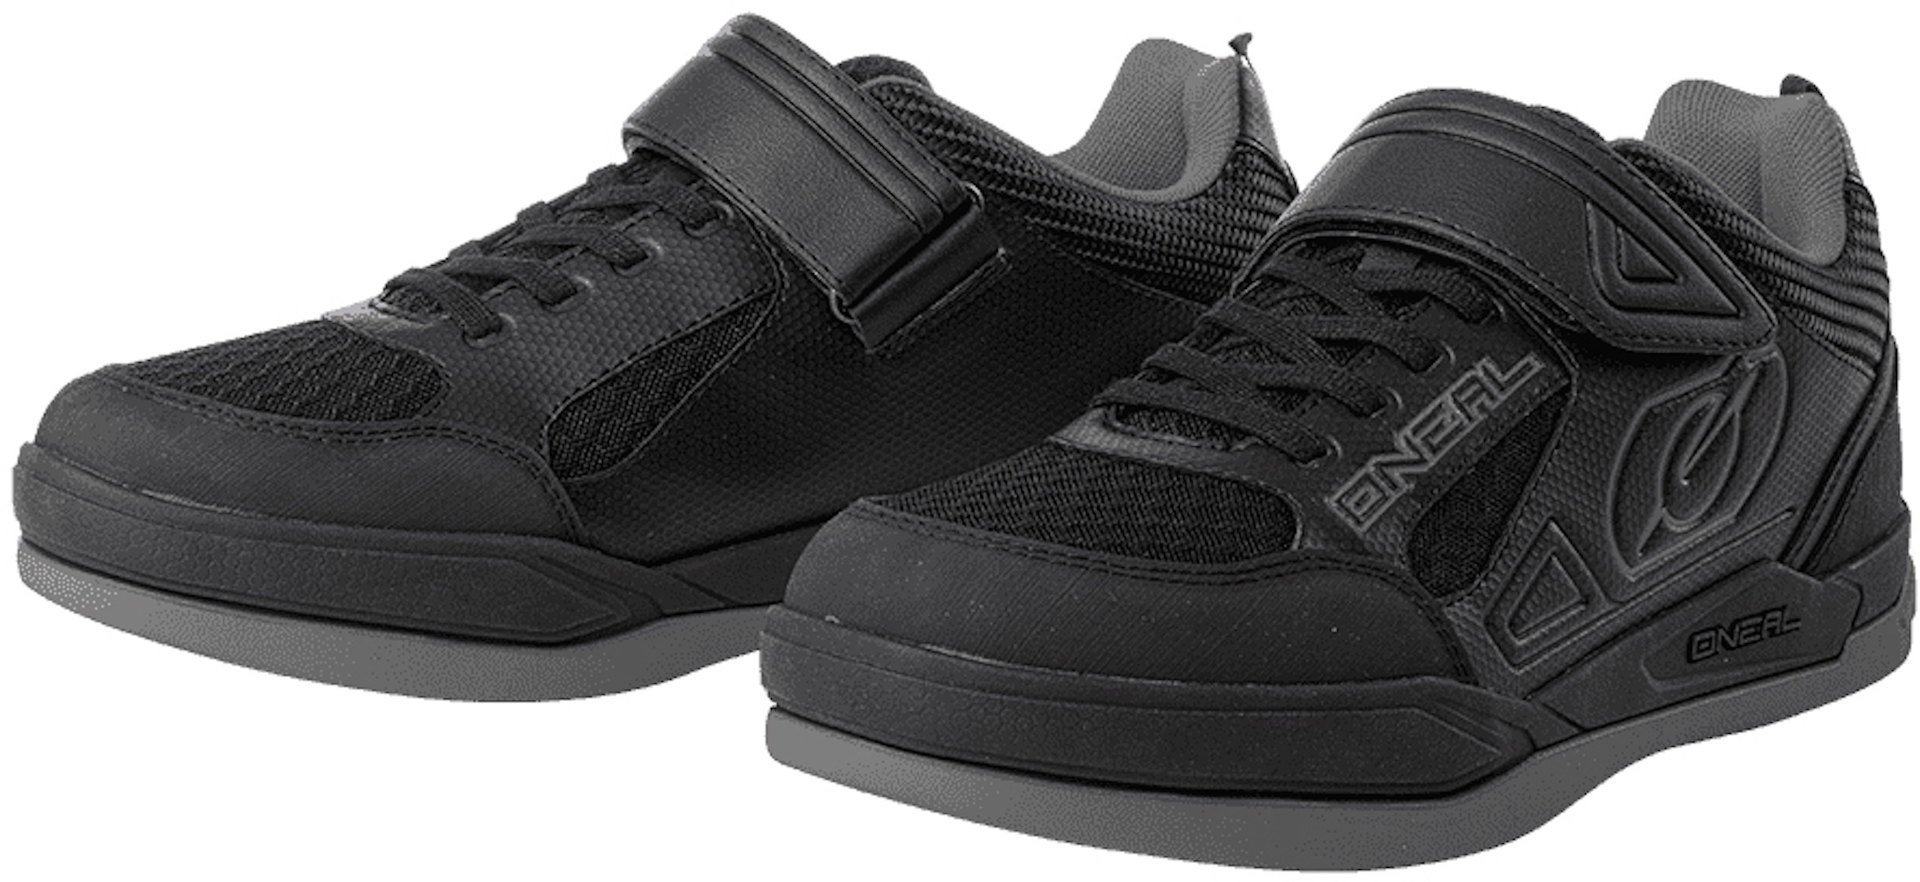 Oneal Sender Flat Schuhe, schwarz-grau, Größe 39, schwarz-grau, Größe 39